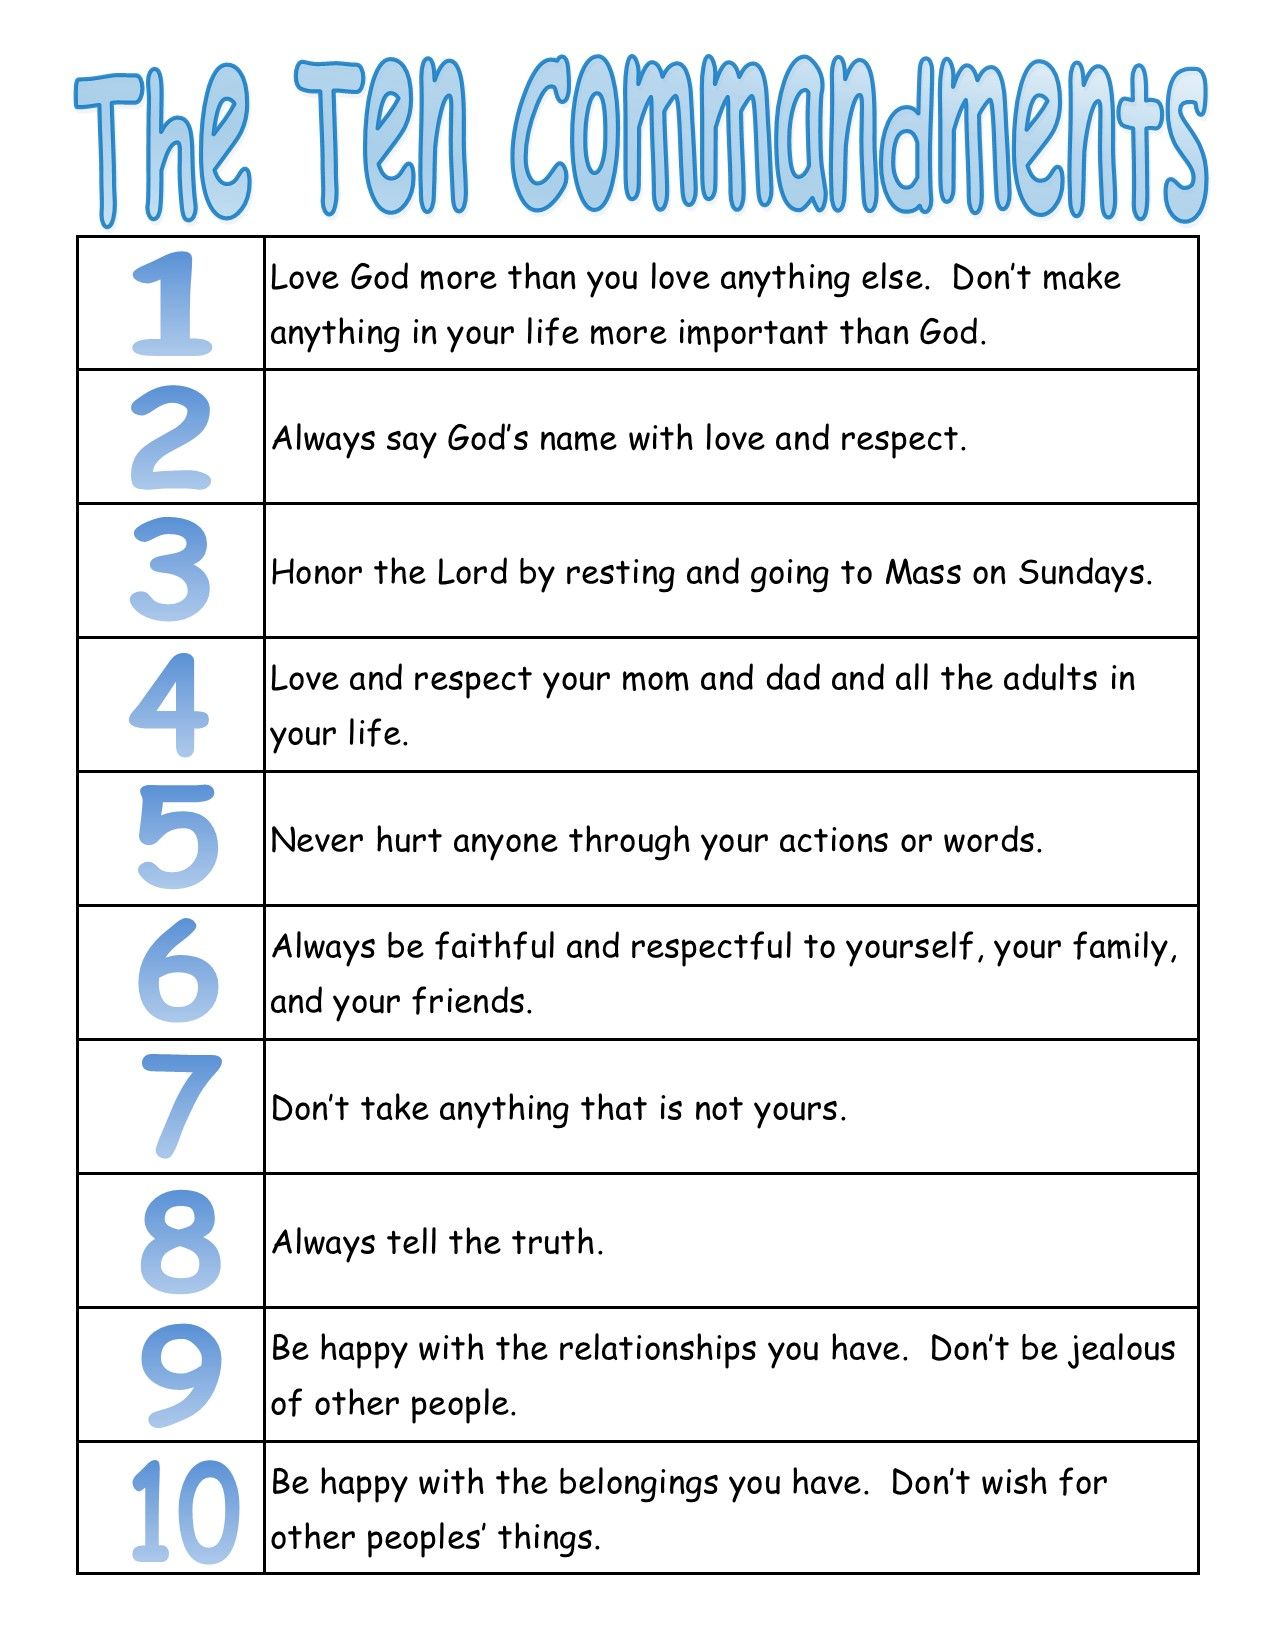 ten-commandments-clipart-meaning-ten-commandments-meaning-transparent